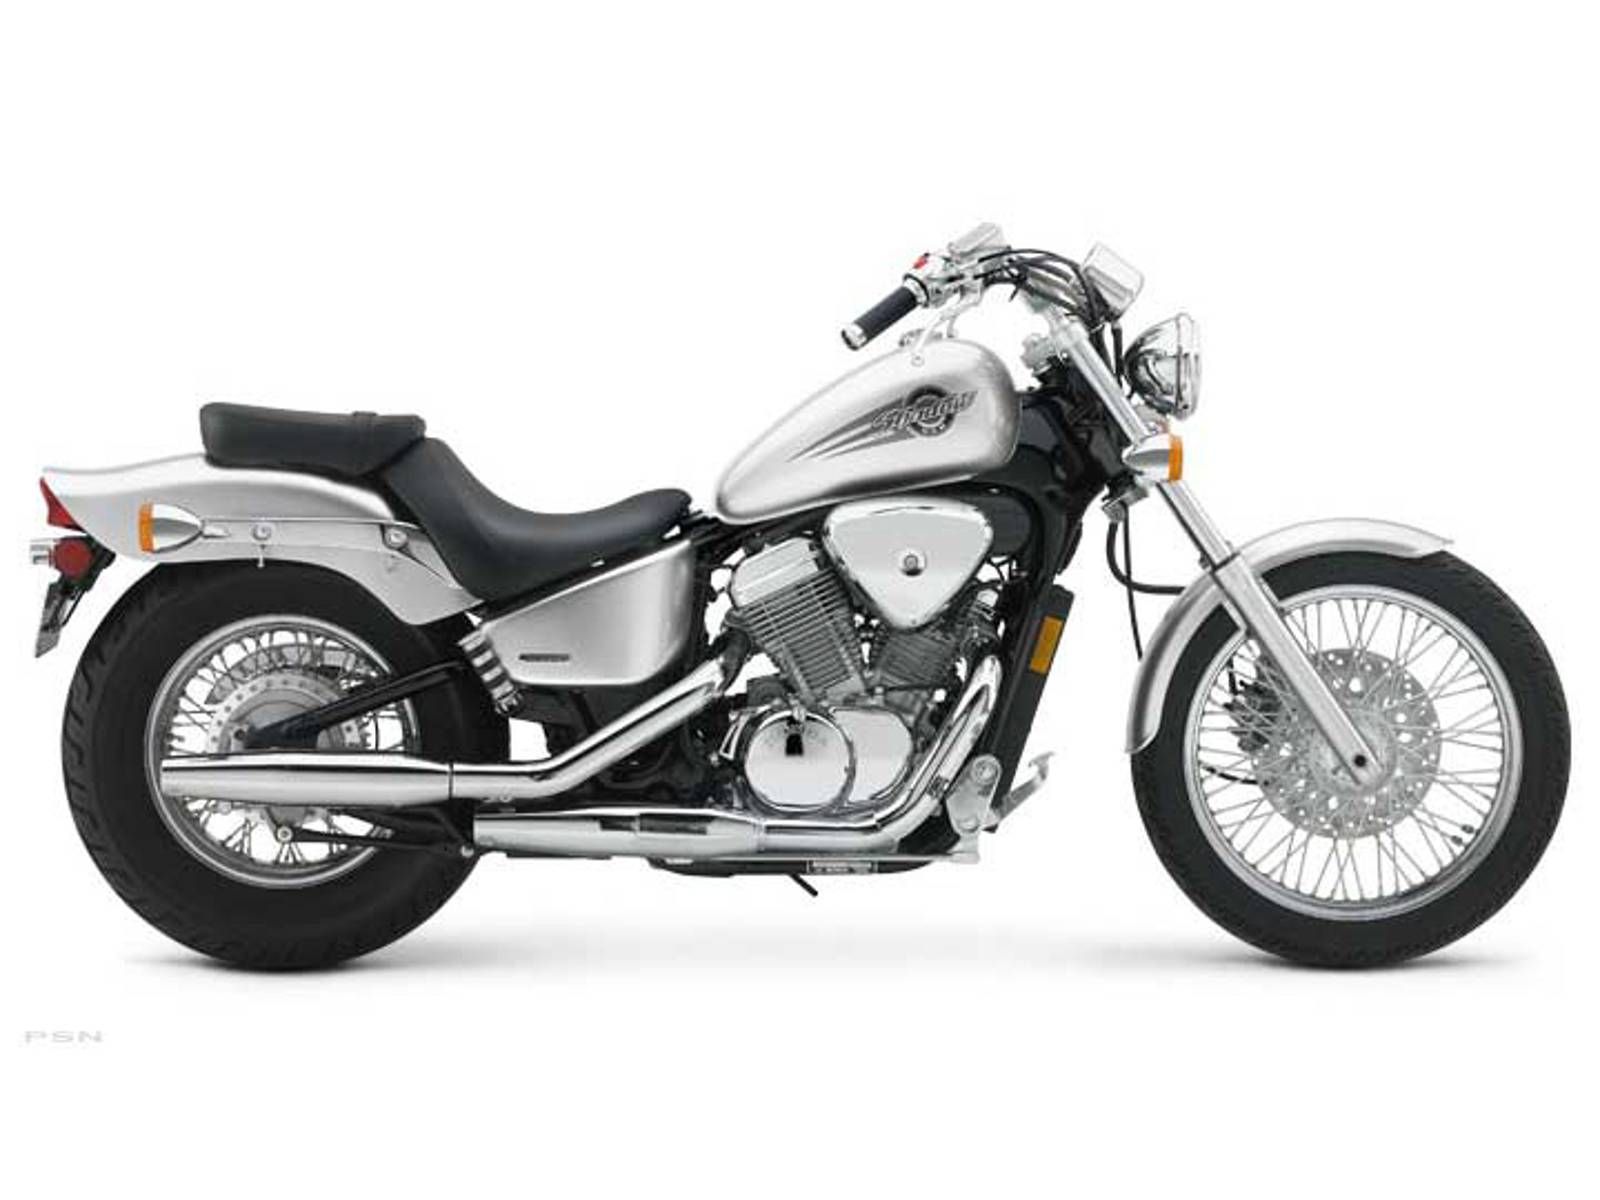 Honda shadow 750 — мотоцикл мечты для тех, кто ценит скорость и мощность